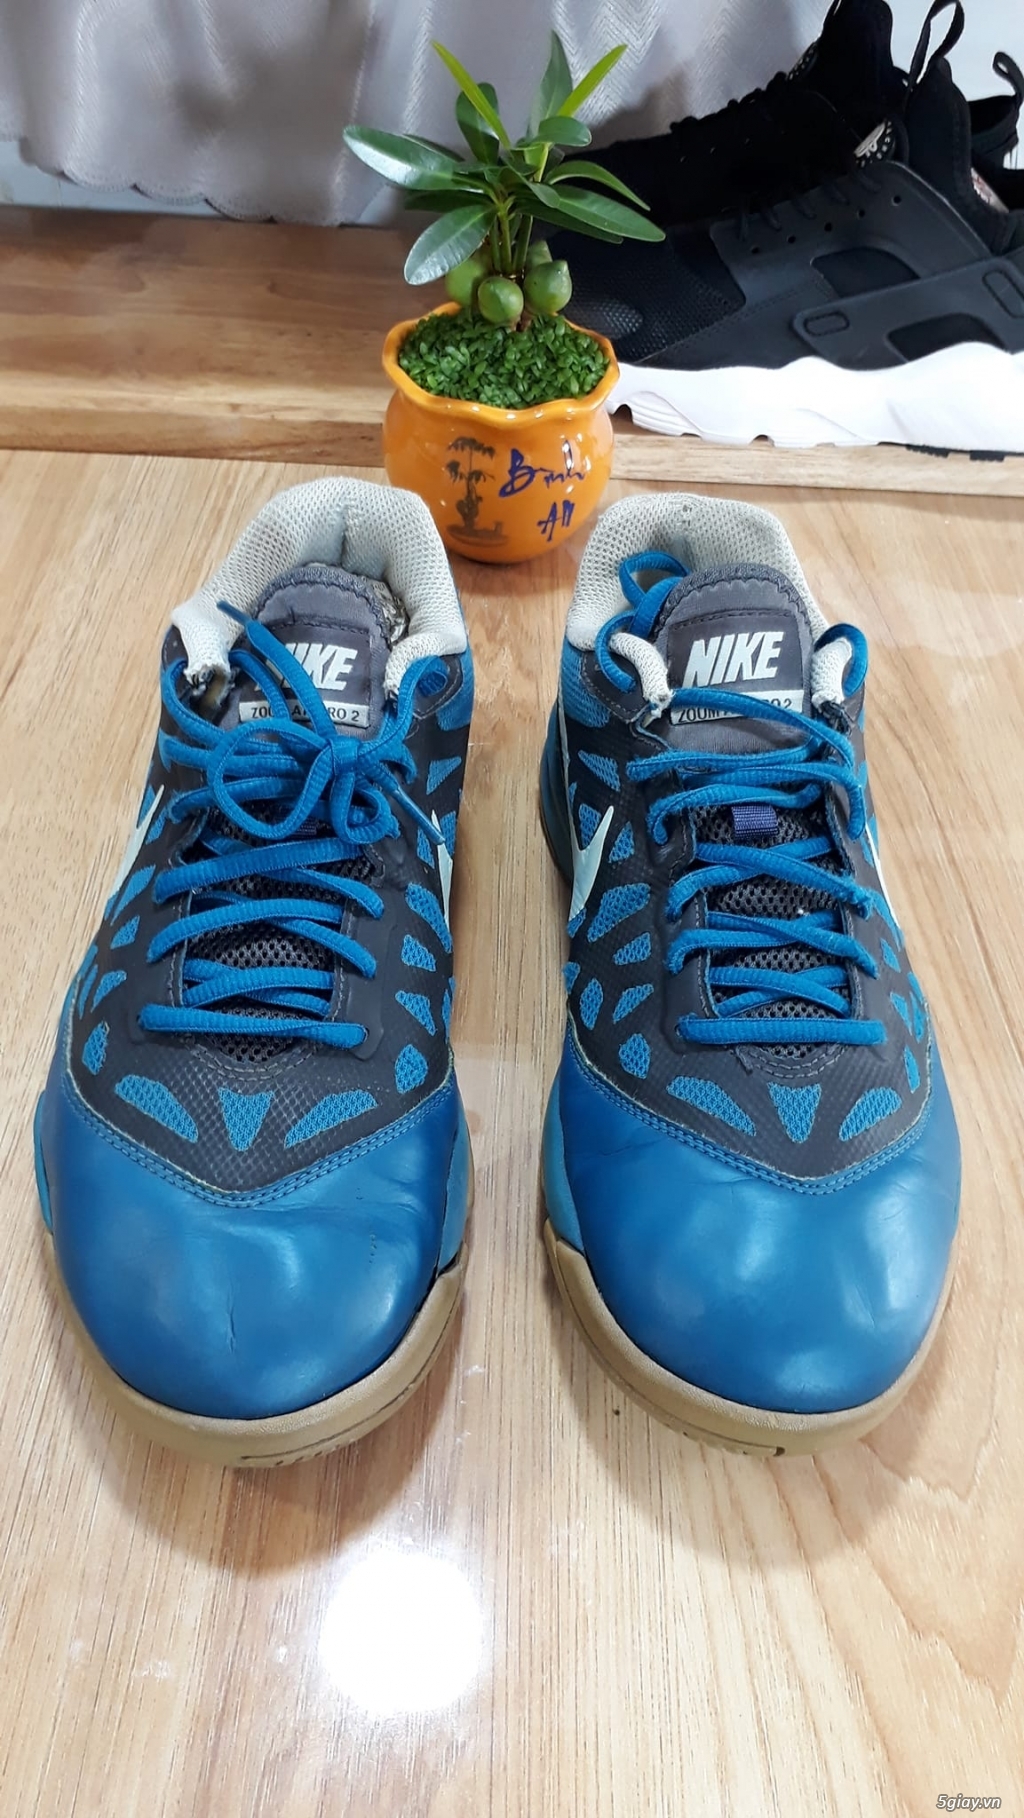 Giày Nike xanh size 40VN 2hand chính hãng - Giày cũ Mỹ Thái Q7